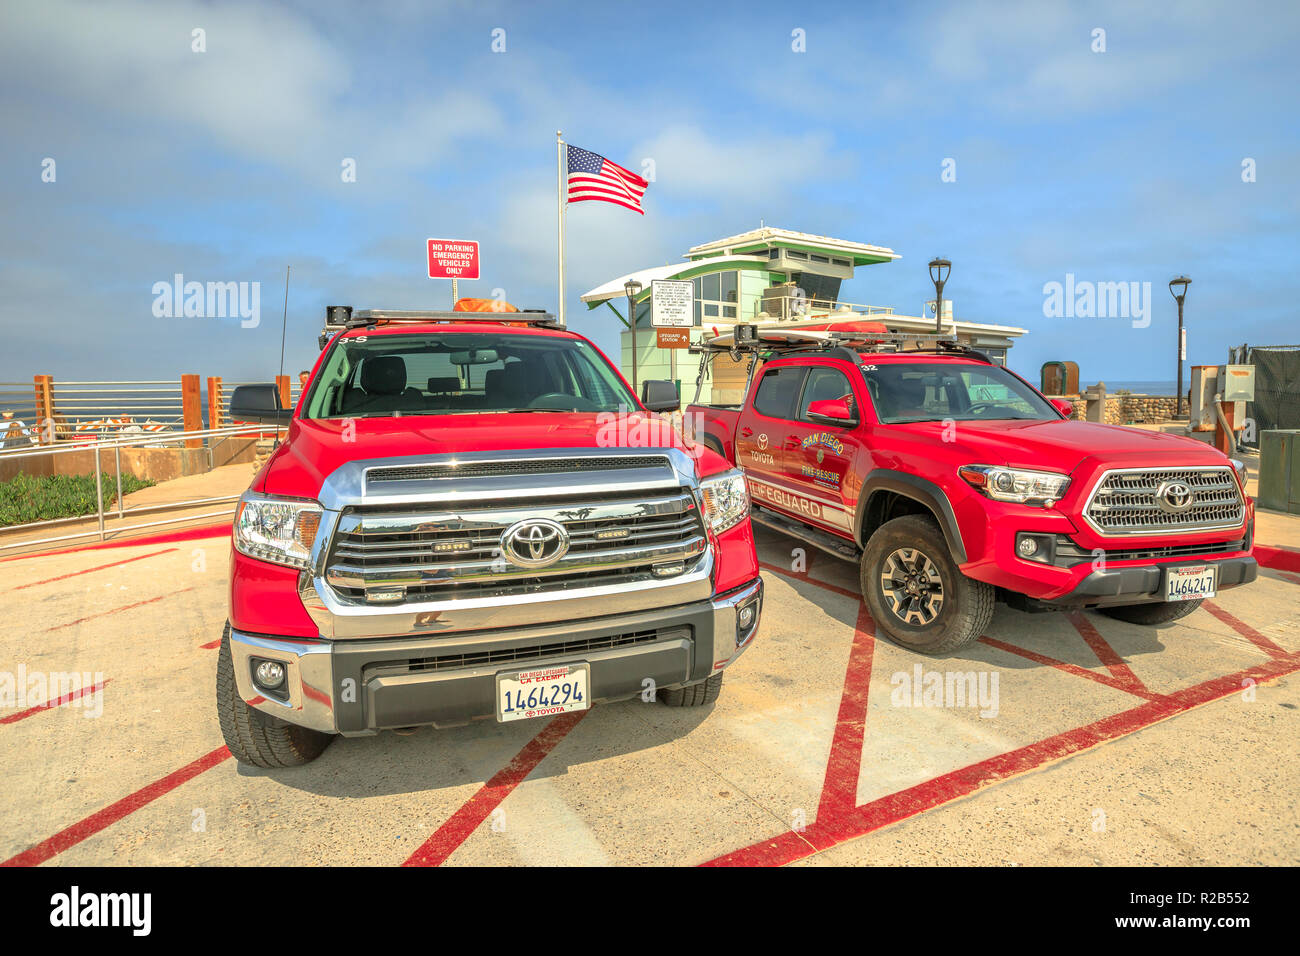 La Jolla, Kalifornien, USA - August 3, 2018: American lifeguard Feuer - Rettung mit amerikanischer Flagge. Zwei Fahrzeuge 4x4 Toyota Pickup patroling Strand von San Diego. Kalifornien Feuer in der Pazifischen Küste. Stockfoto